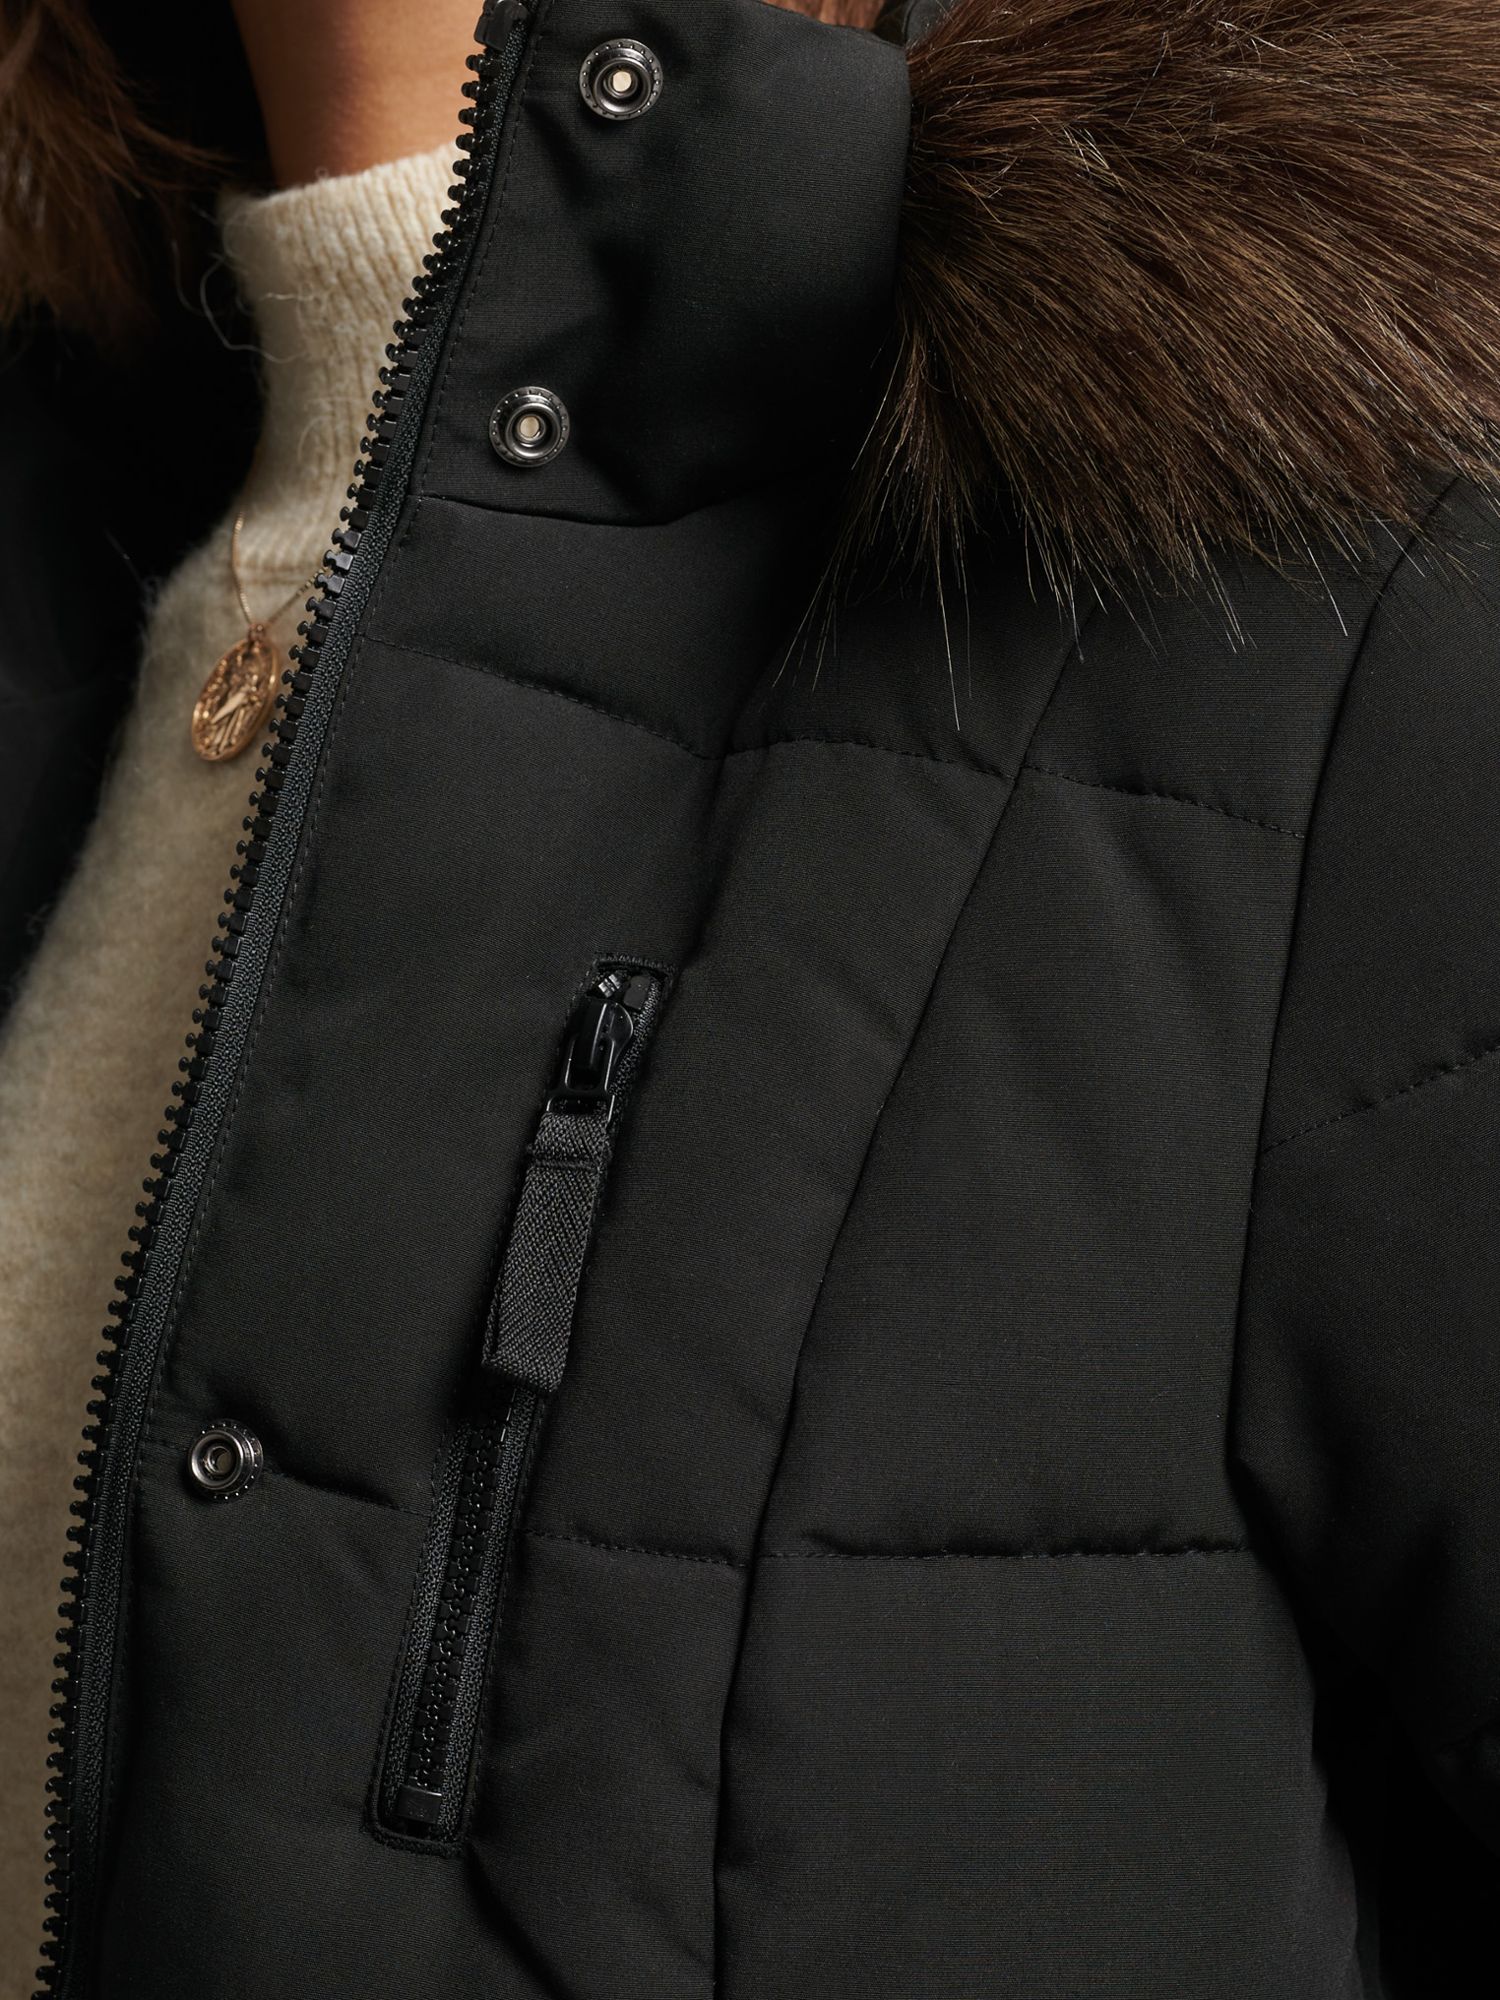 Superdry Original & Vintage Everest Long Line Faux Fur Parka Jacket, Black, 8